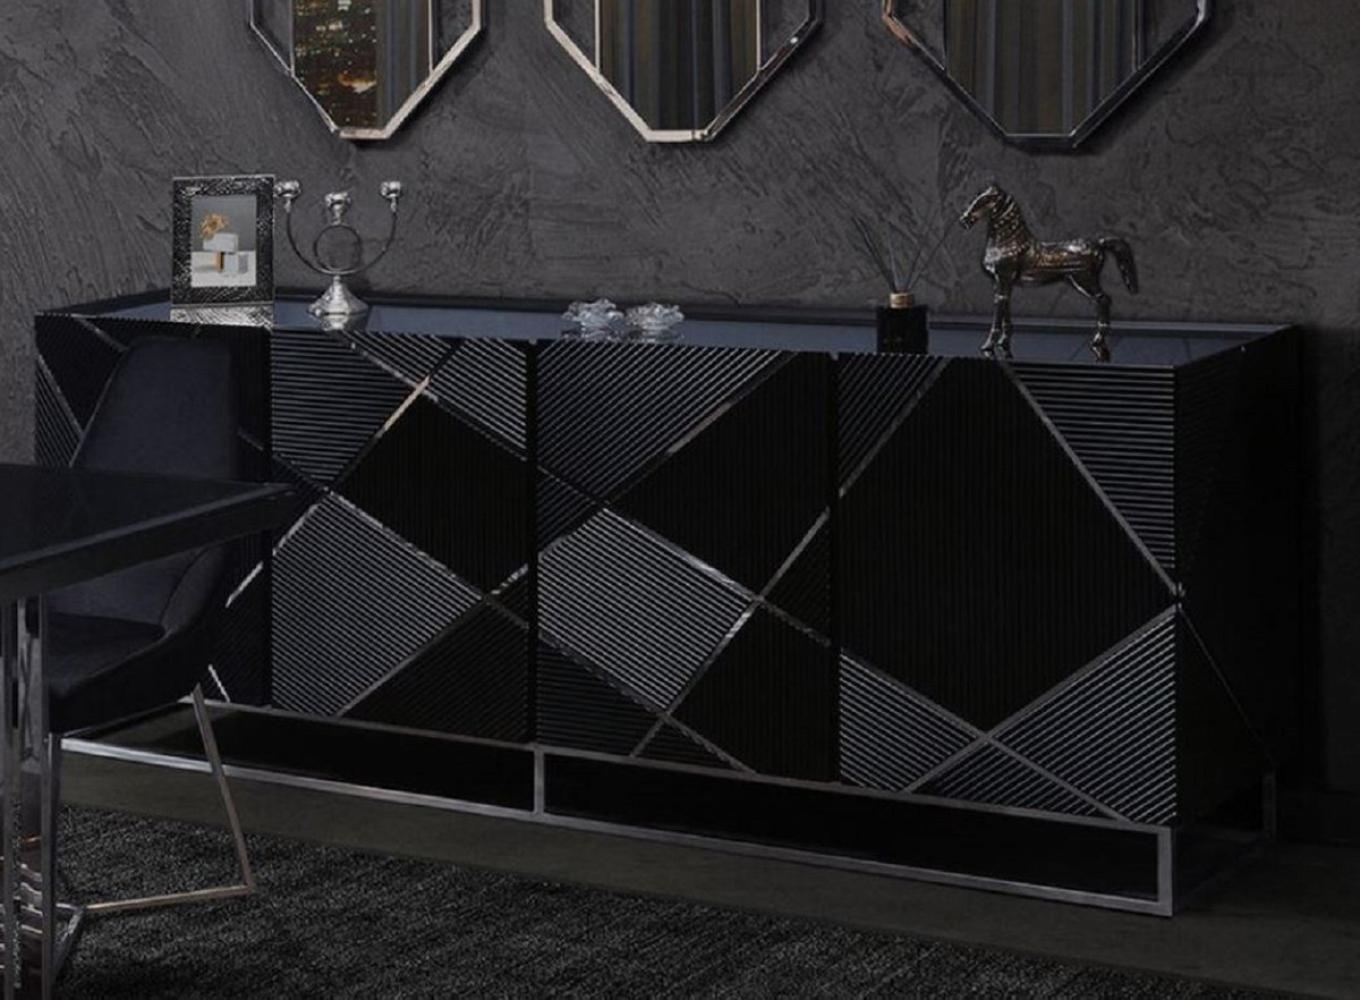 Casa Padrino Luxus Sideboard Schwarz / Silber 220 x 53 x H. 86 cm - Wohnzimmer Sideboard mit 4 Türen - Luxus Möbel Bild 1